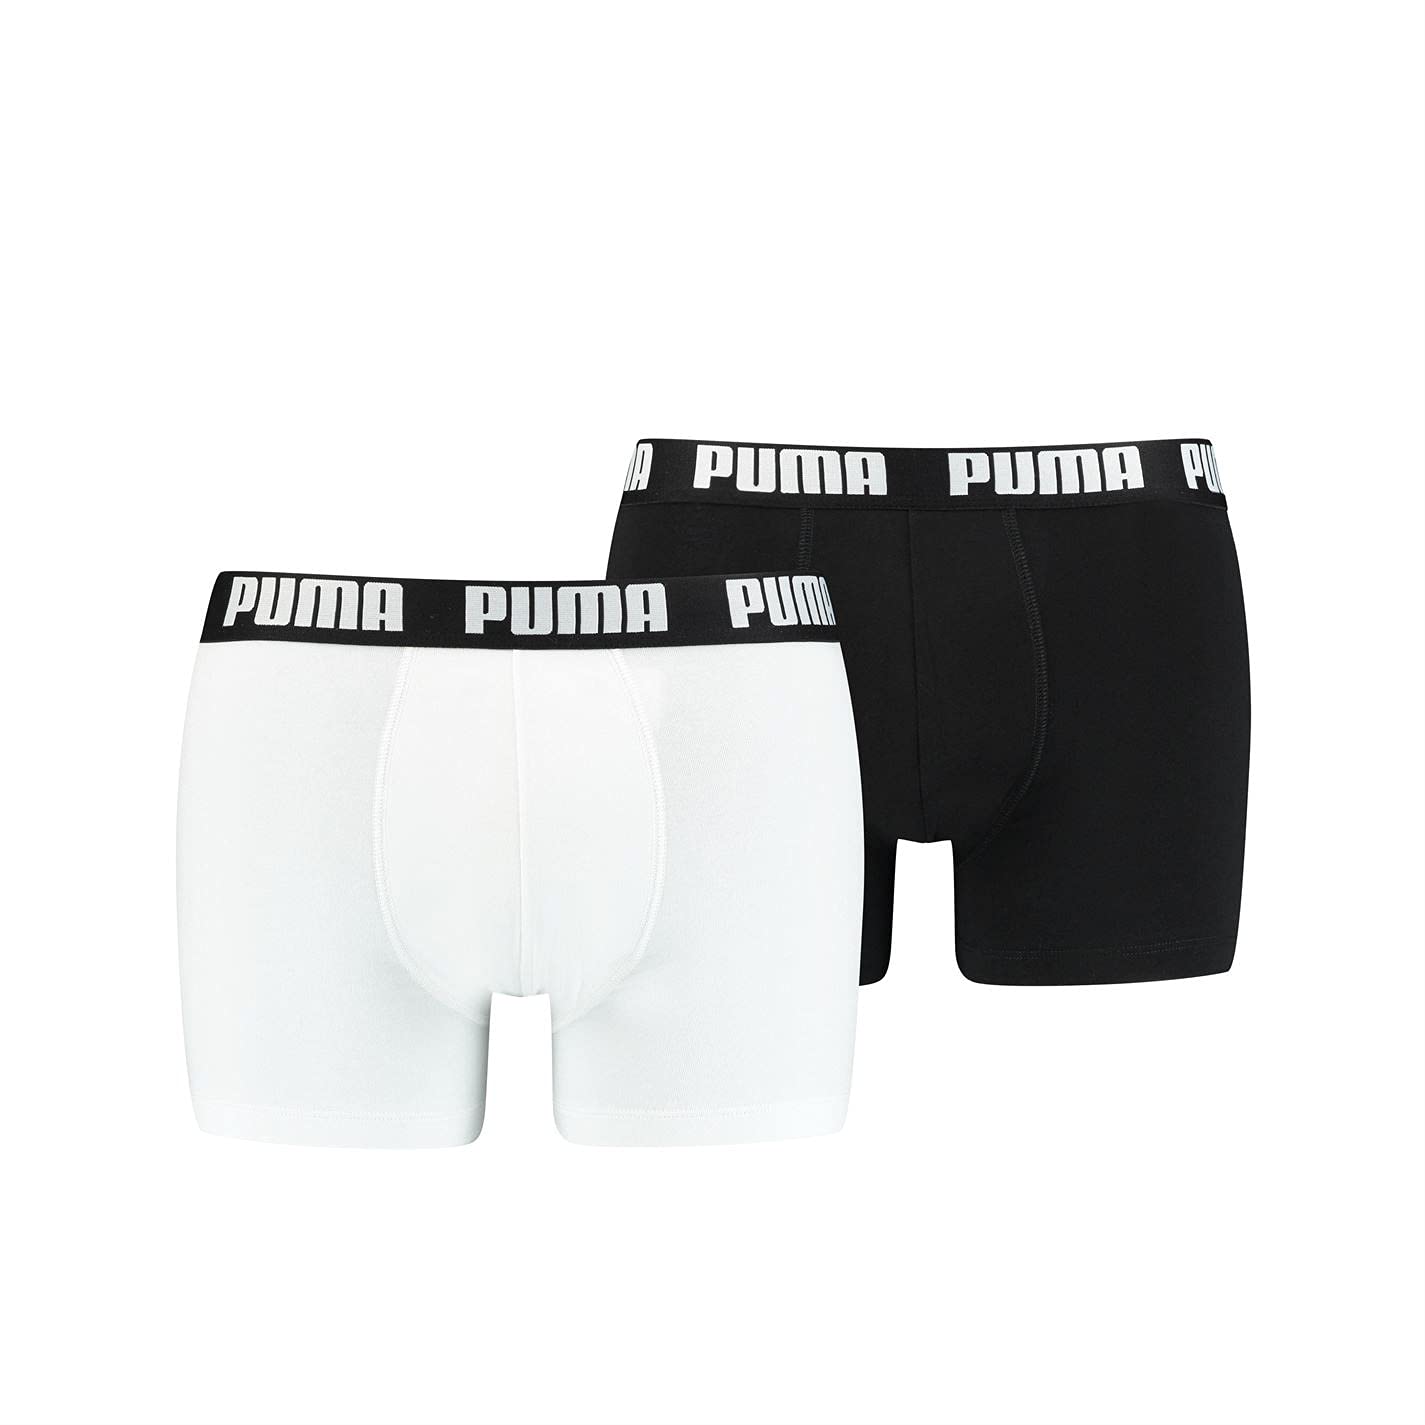 PUMA Herren Basic Boxers Boxer-Shorts, Weiß/Schwarz, L (2er Pack)